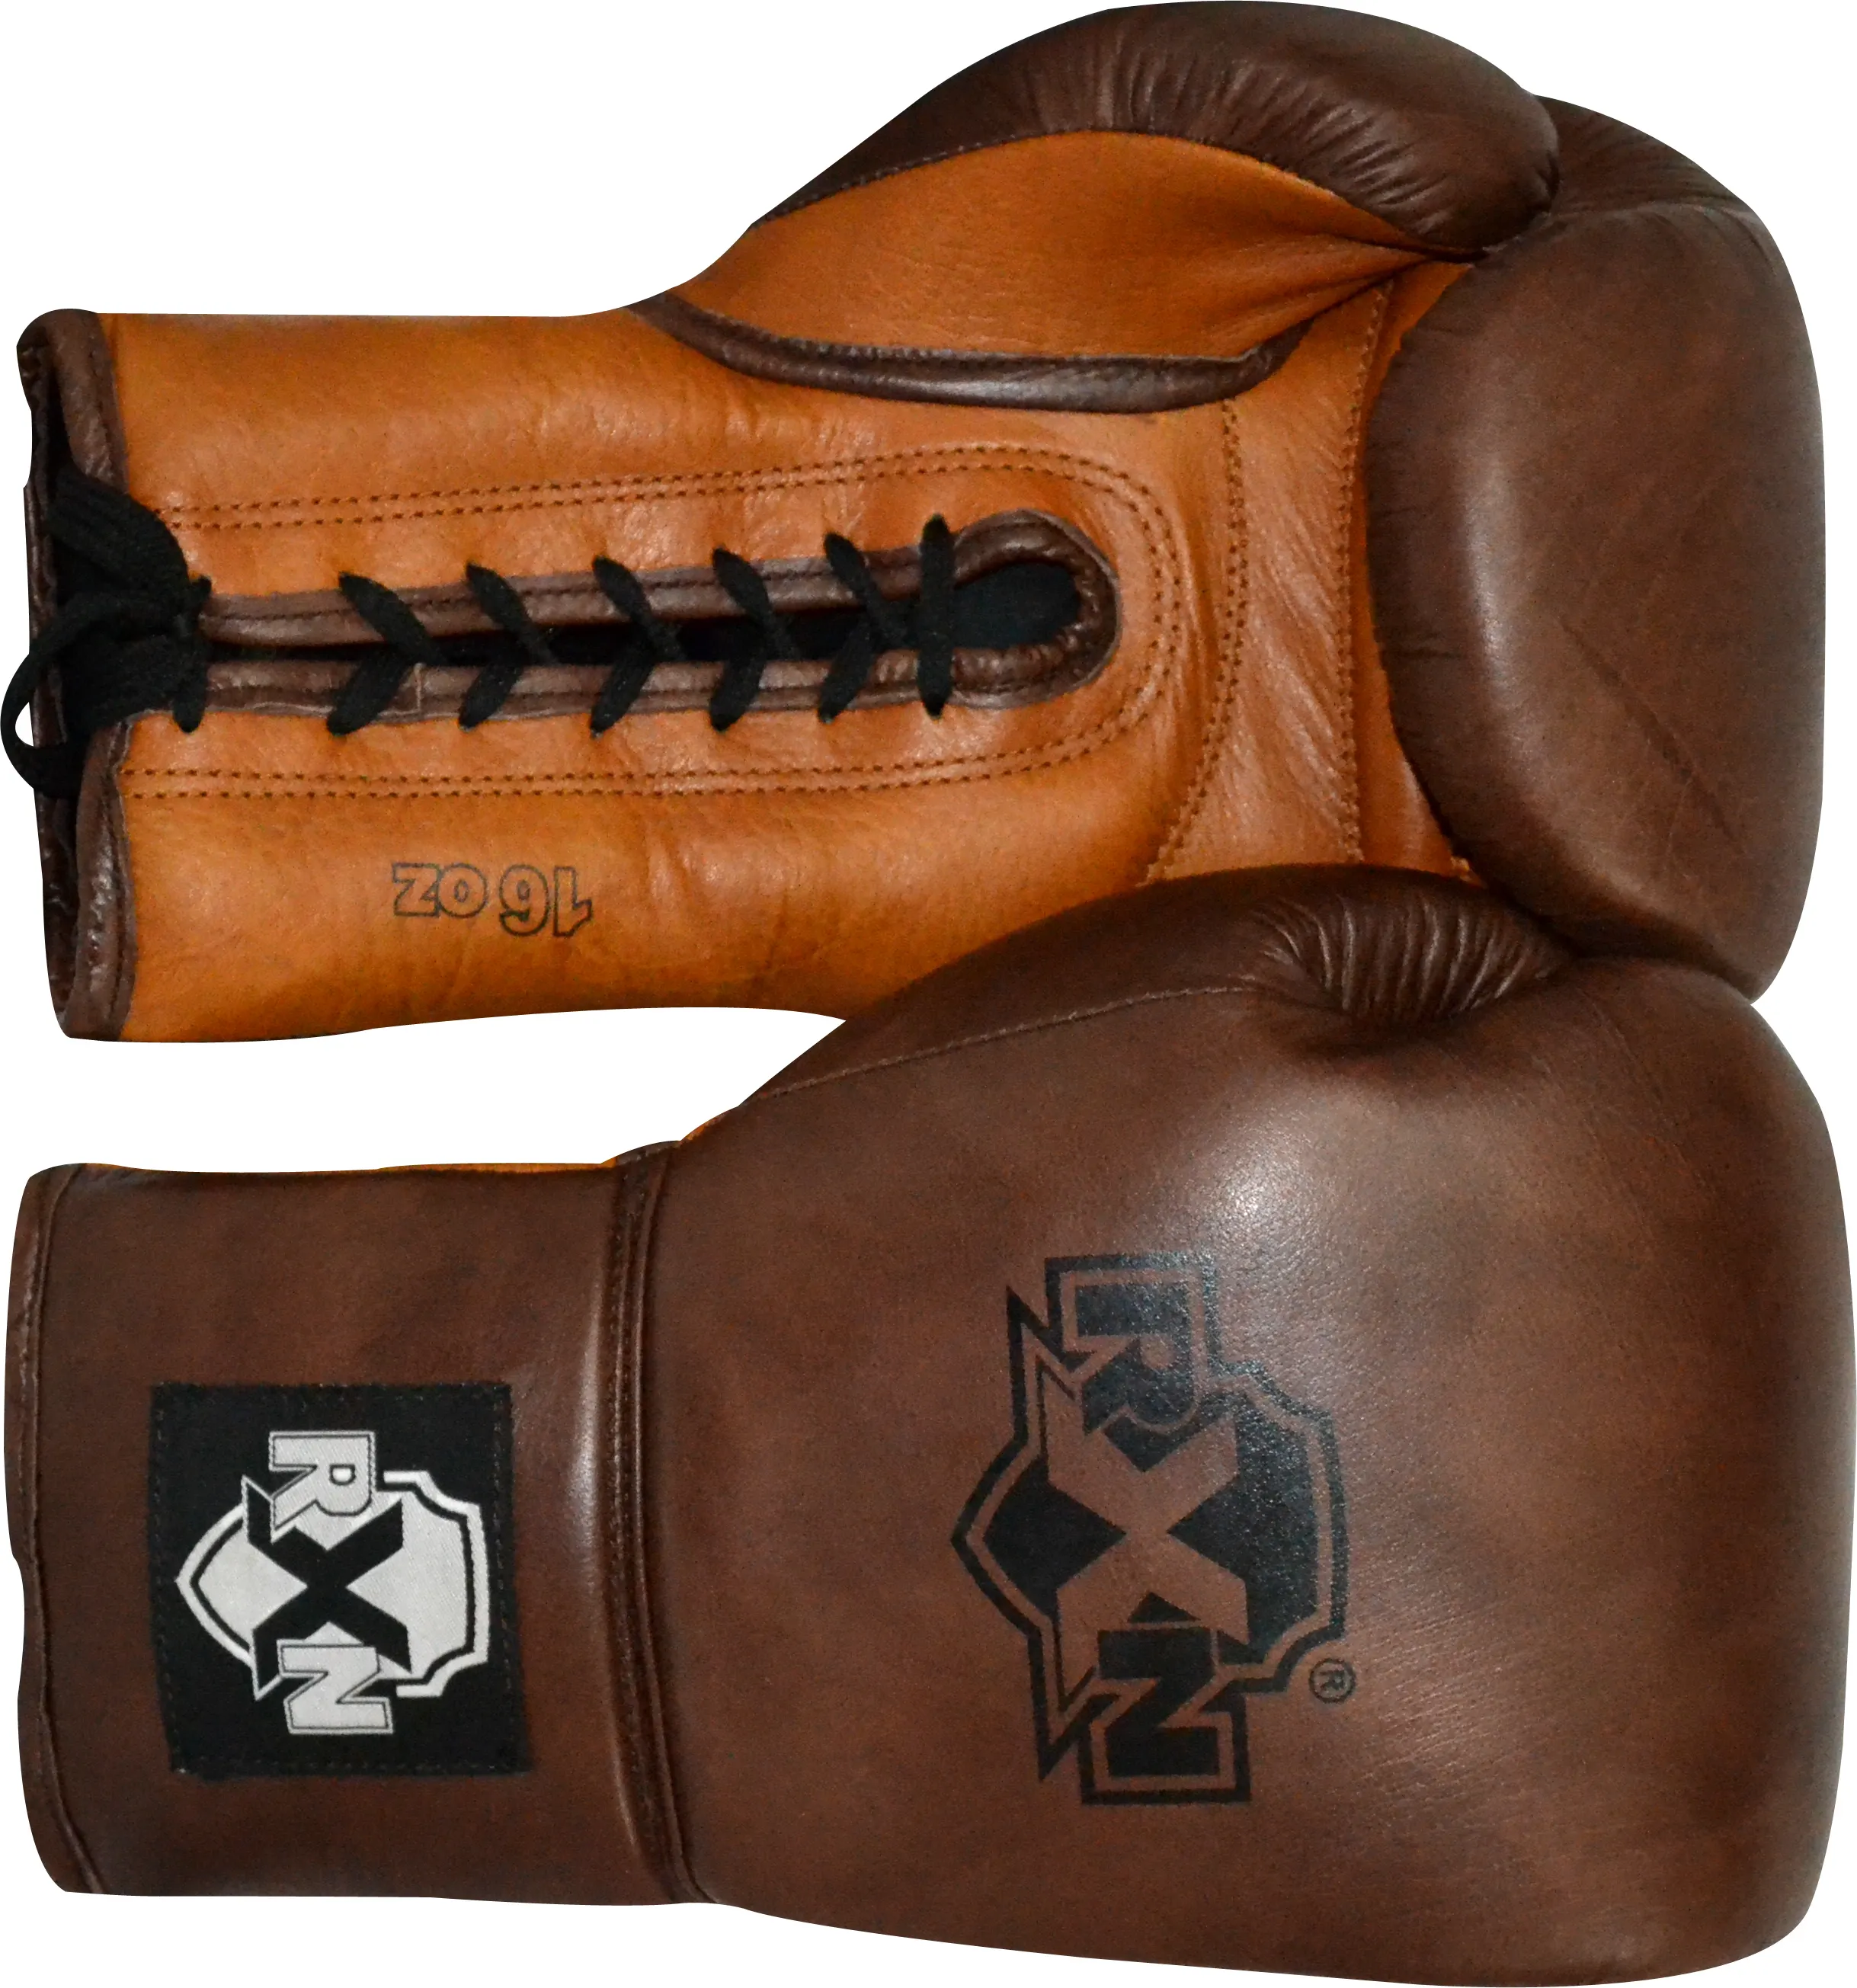 Pro Box handschuh mit Schnürsenkeln für den Kampf Custom Leder Stoff Sicherheits schutz profession elle Kampf Fitness Trainings handschuh